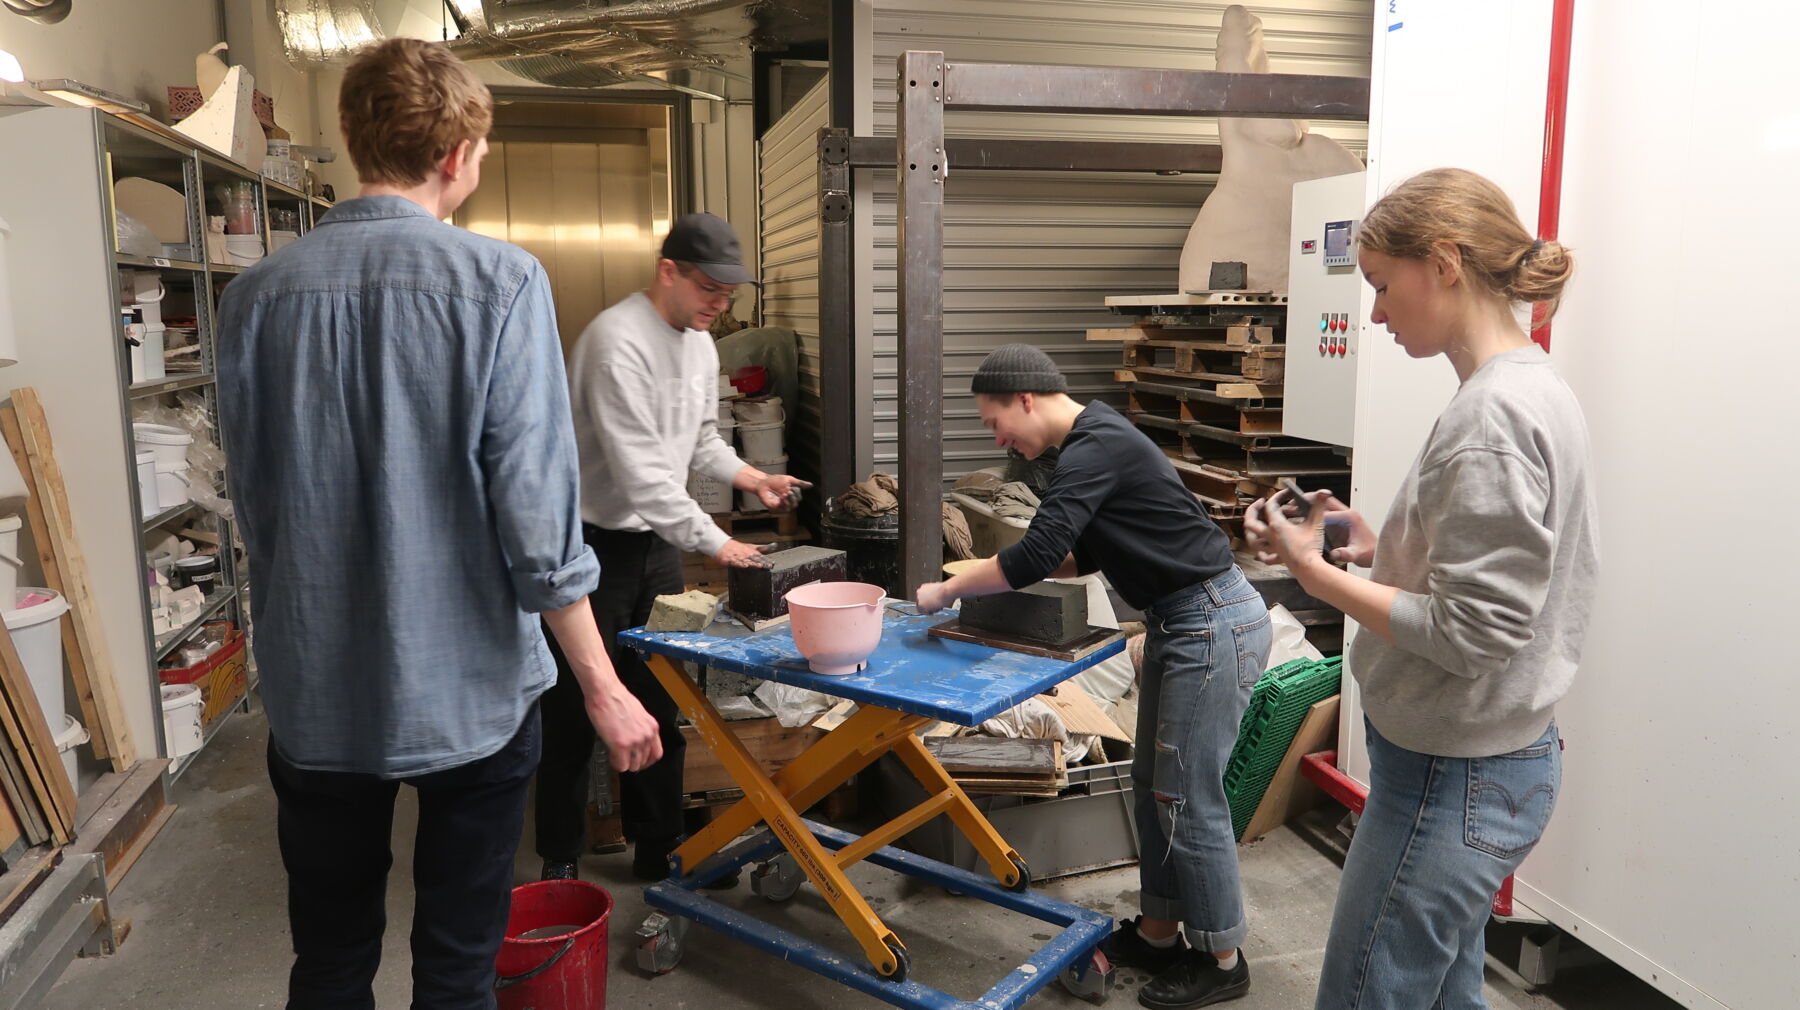 Fire personer stående rundt et arbeidsbord i et verksted. De lager murstein. Foto.